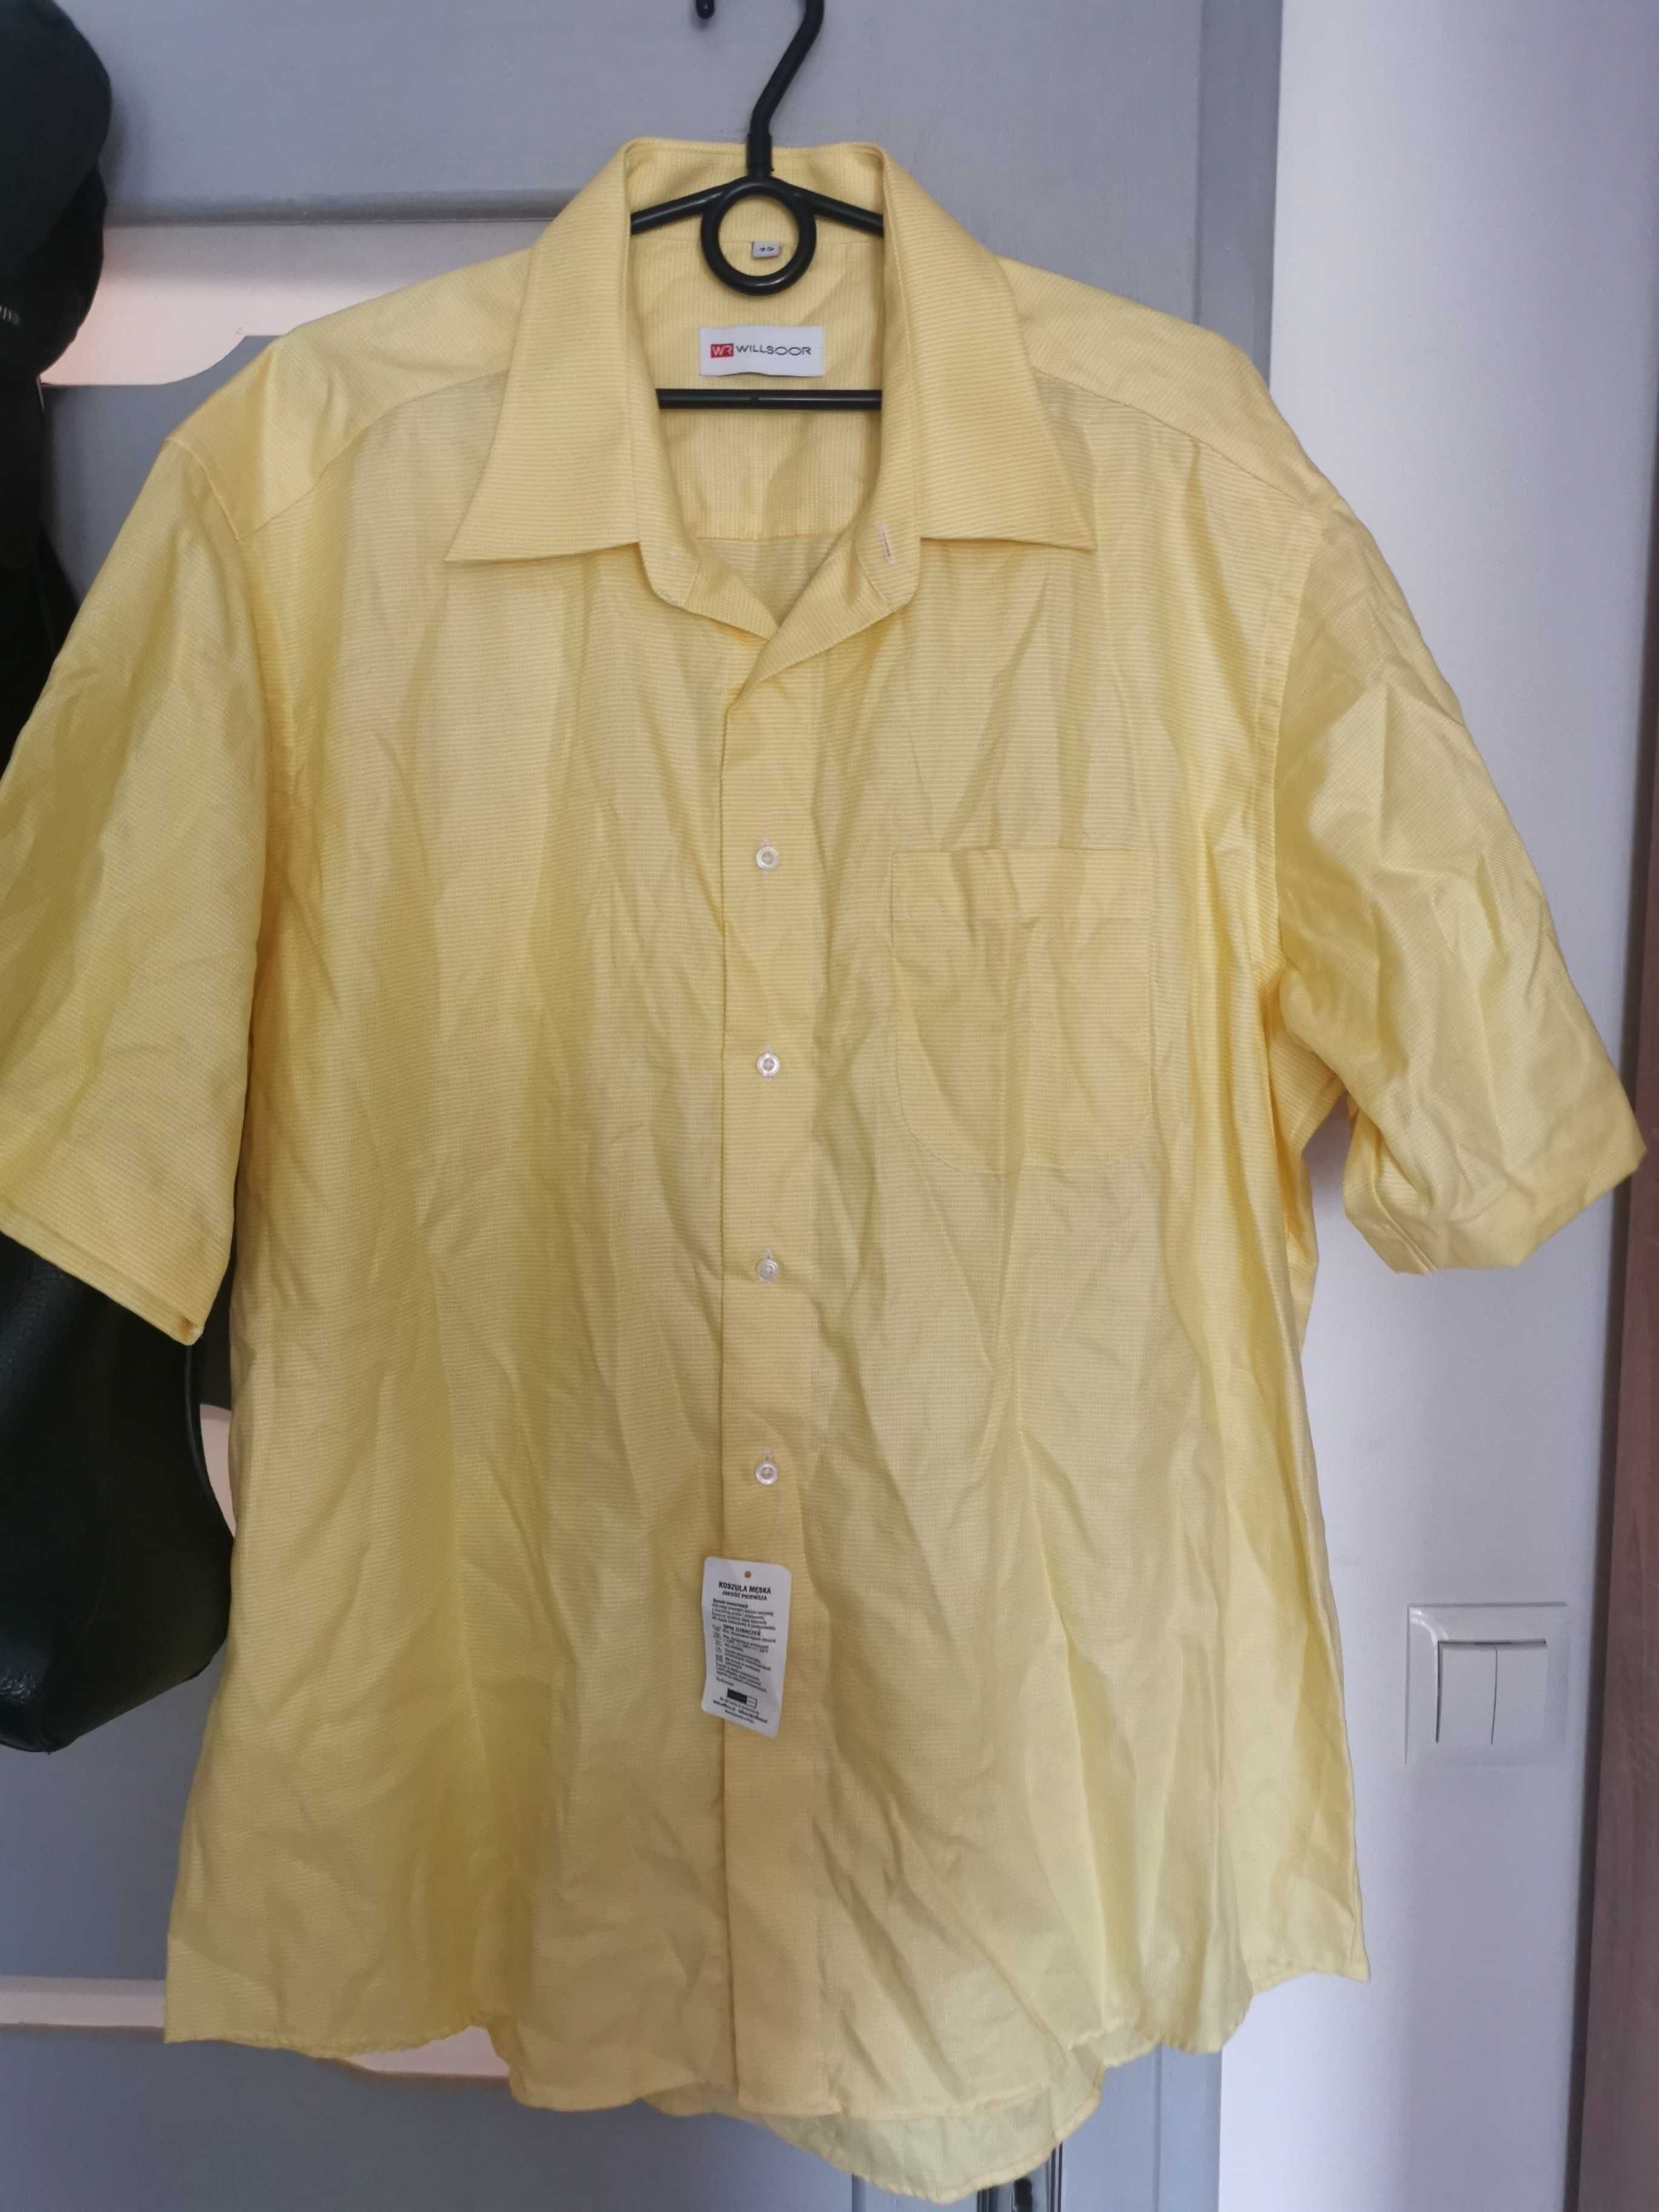 Żółta koszula męska krótki rękaw rozmiar 45 nowa z metką willsoor